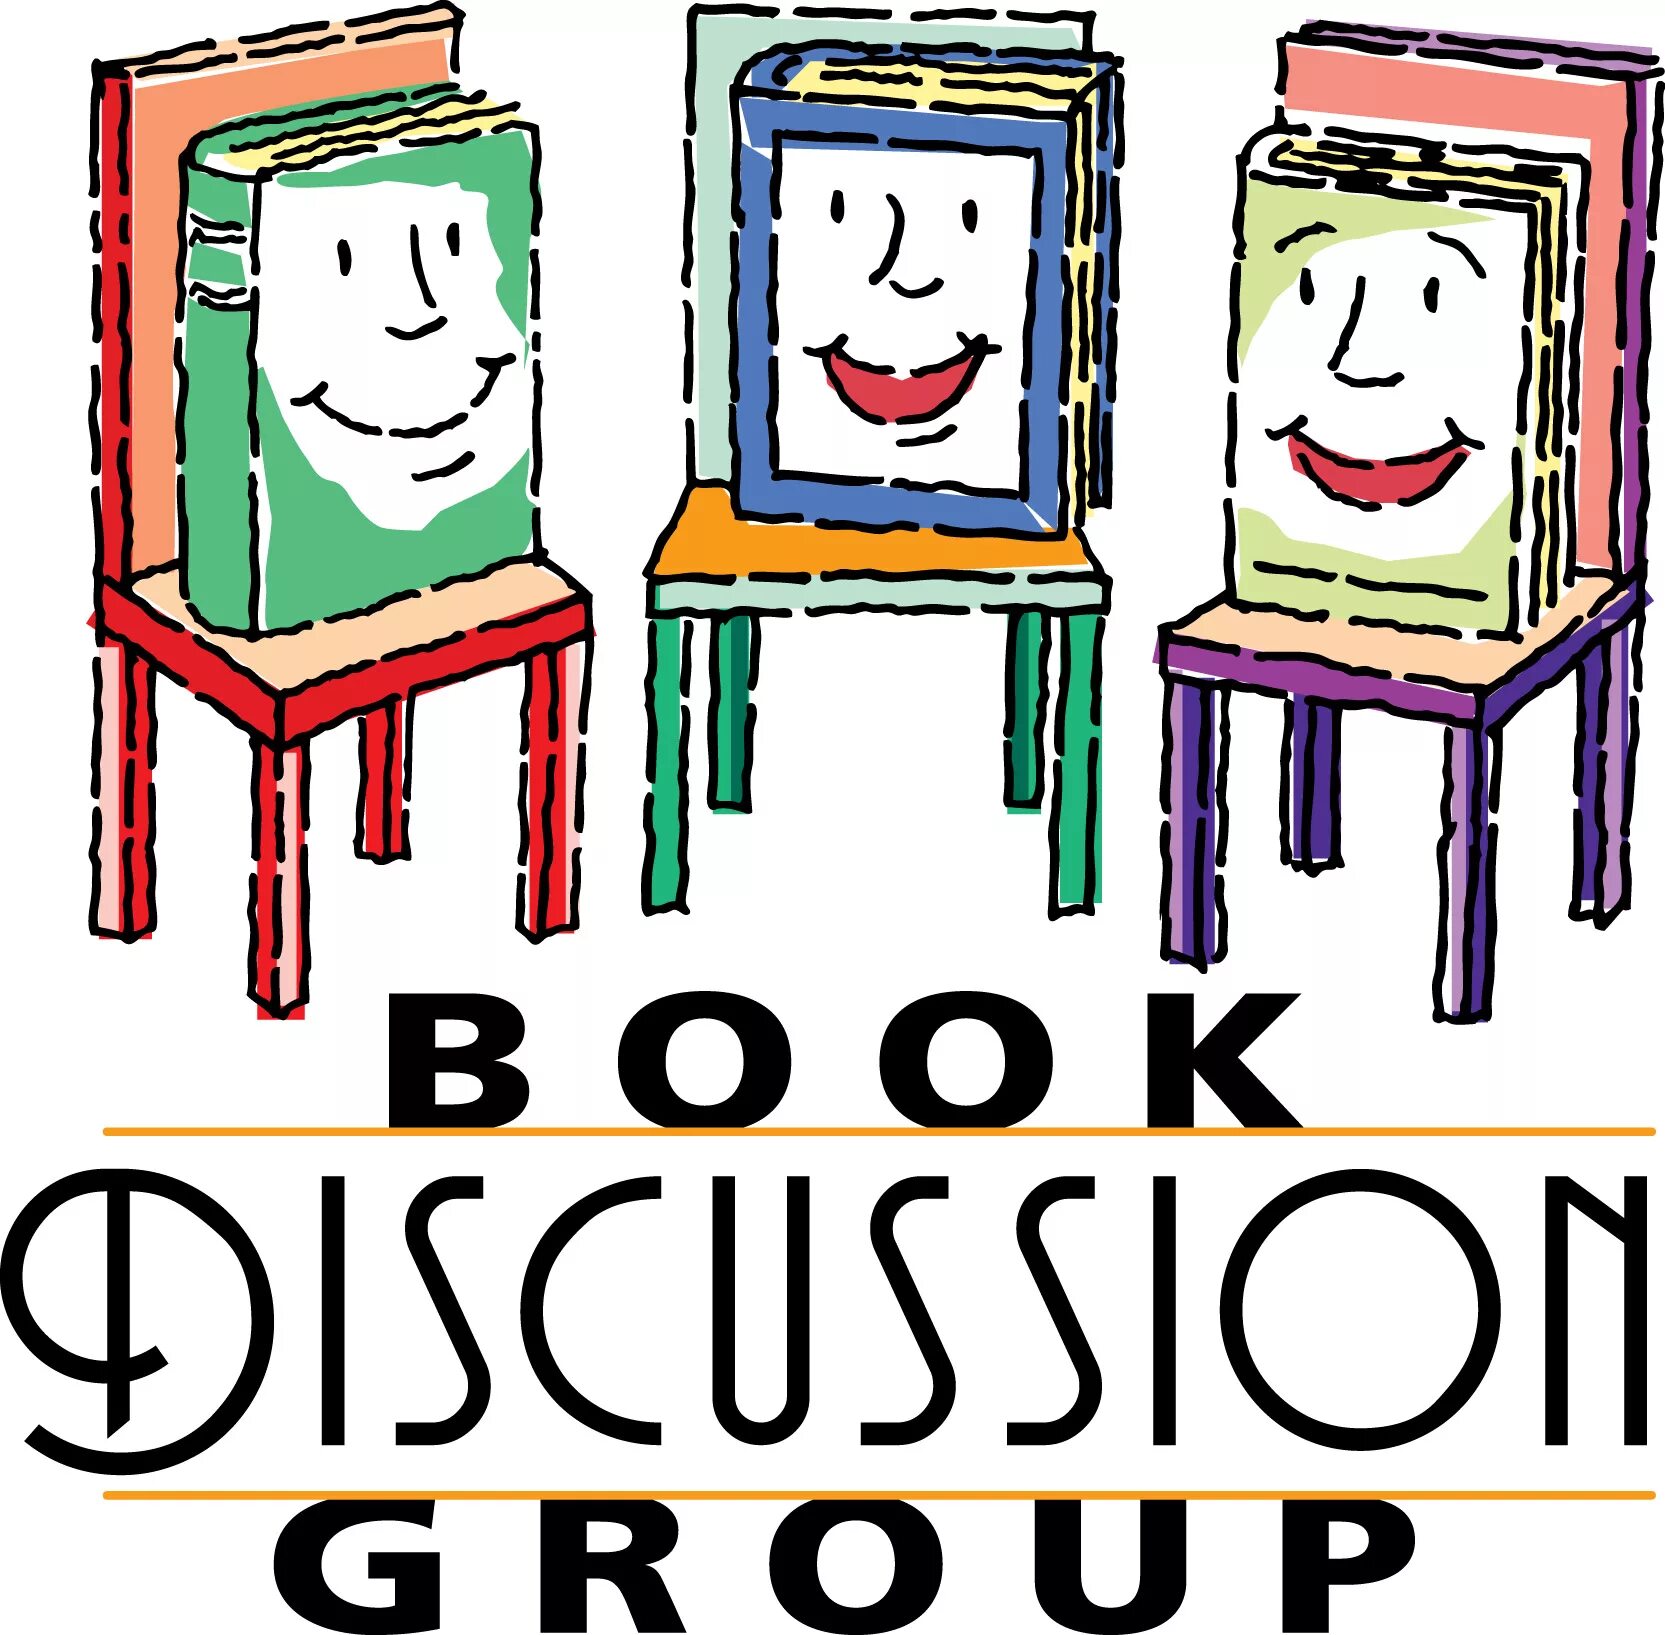 Book Club discussion. Группа the books. Discussing books. Reading Club booklet. Group book 3